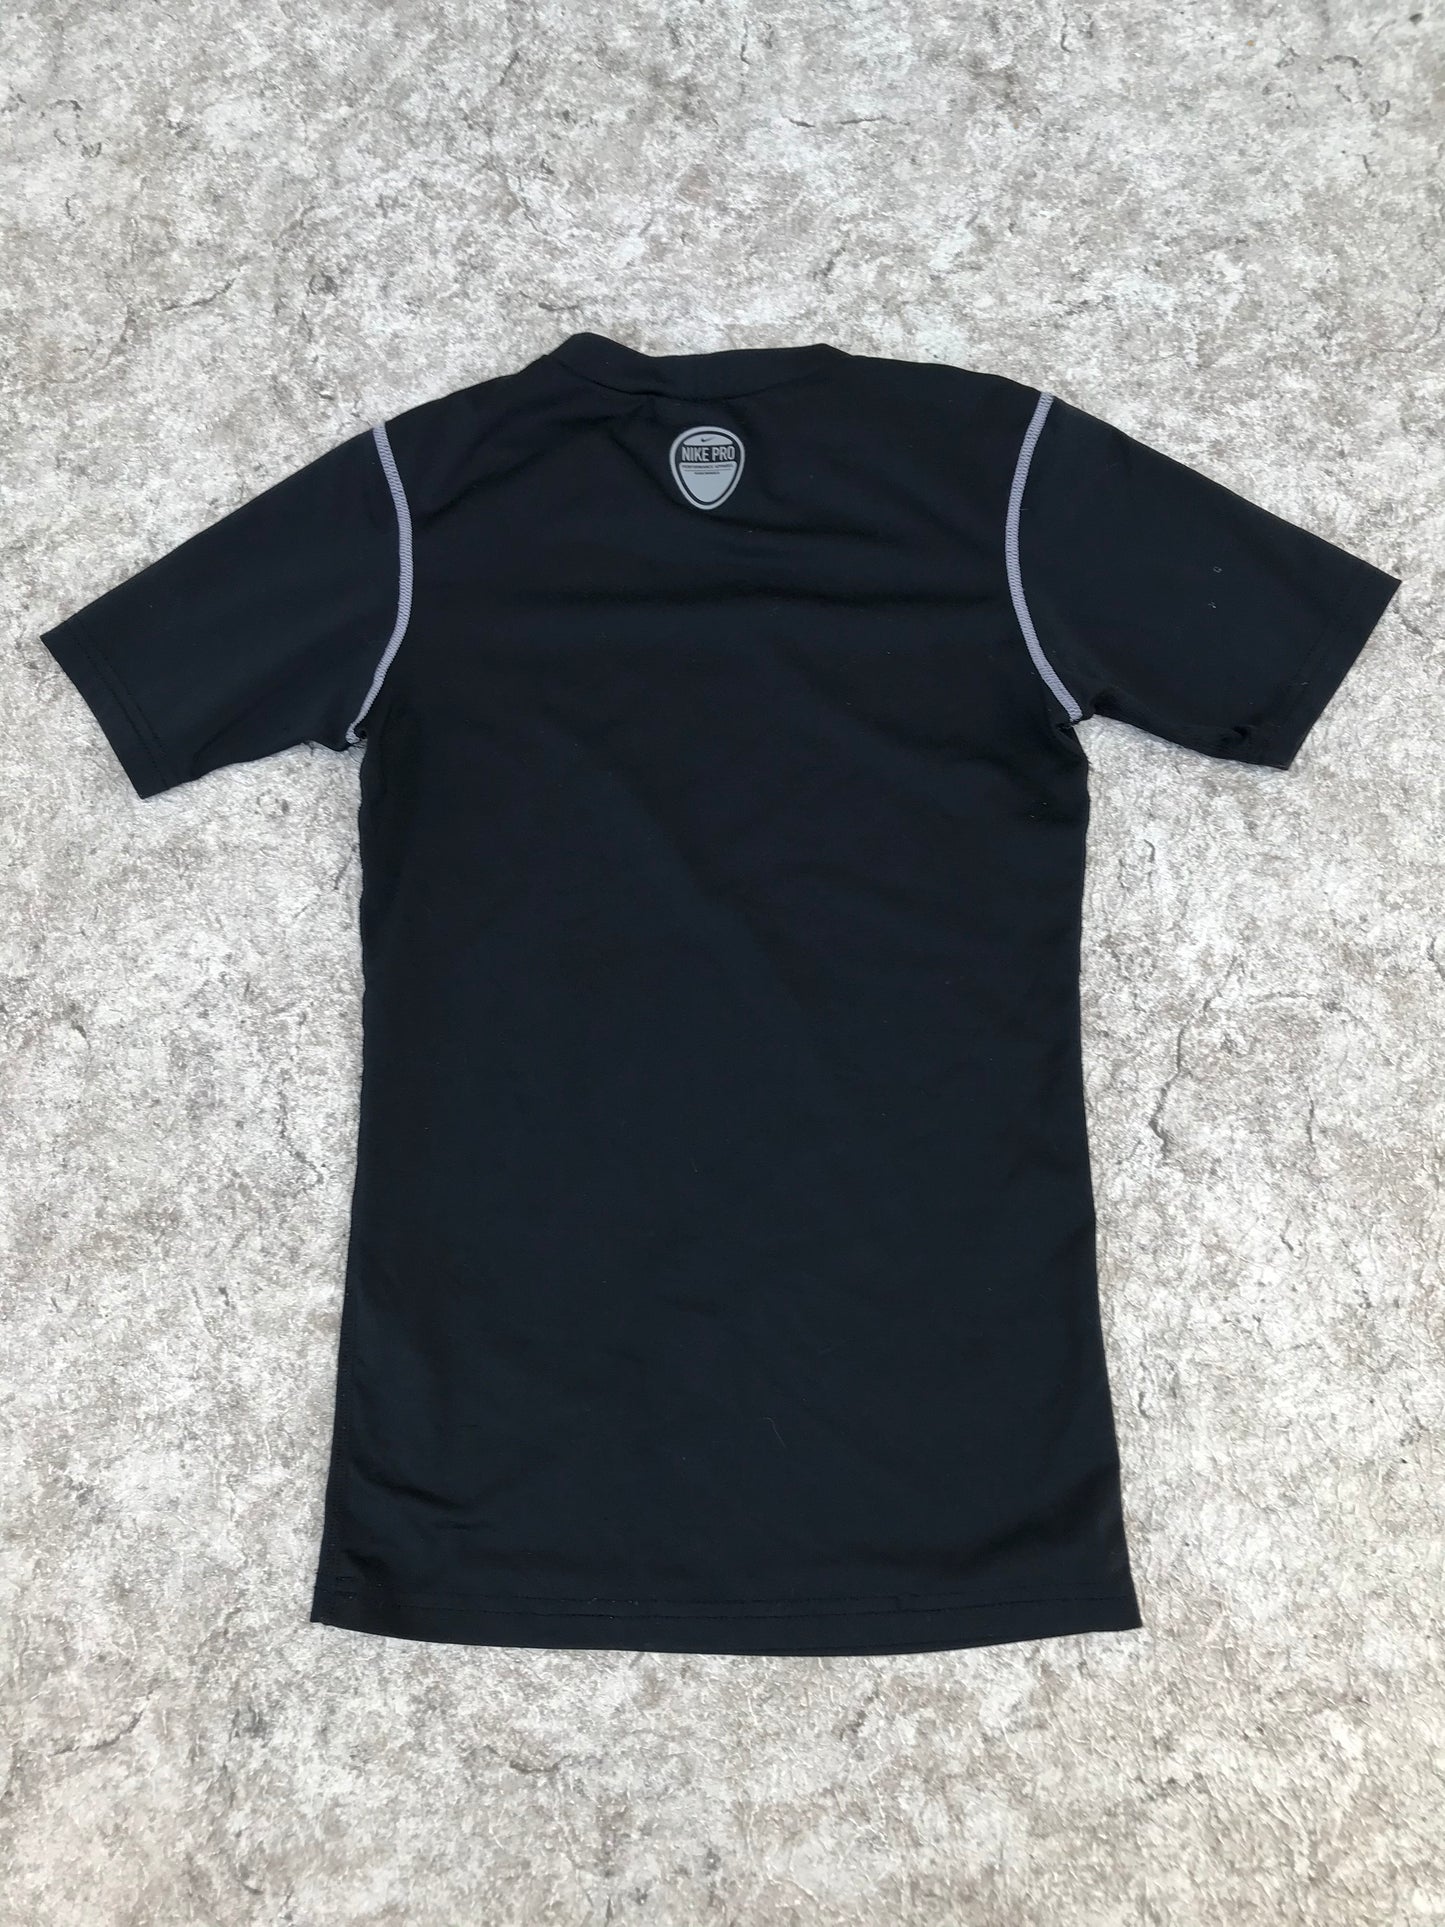 Hockey Base Layer Shirt Child Size Junior Large T 8-10 Nike Black